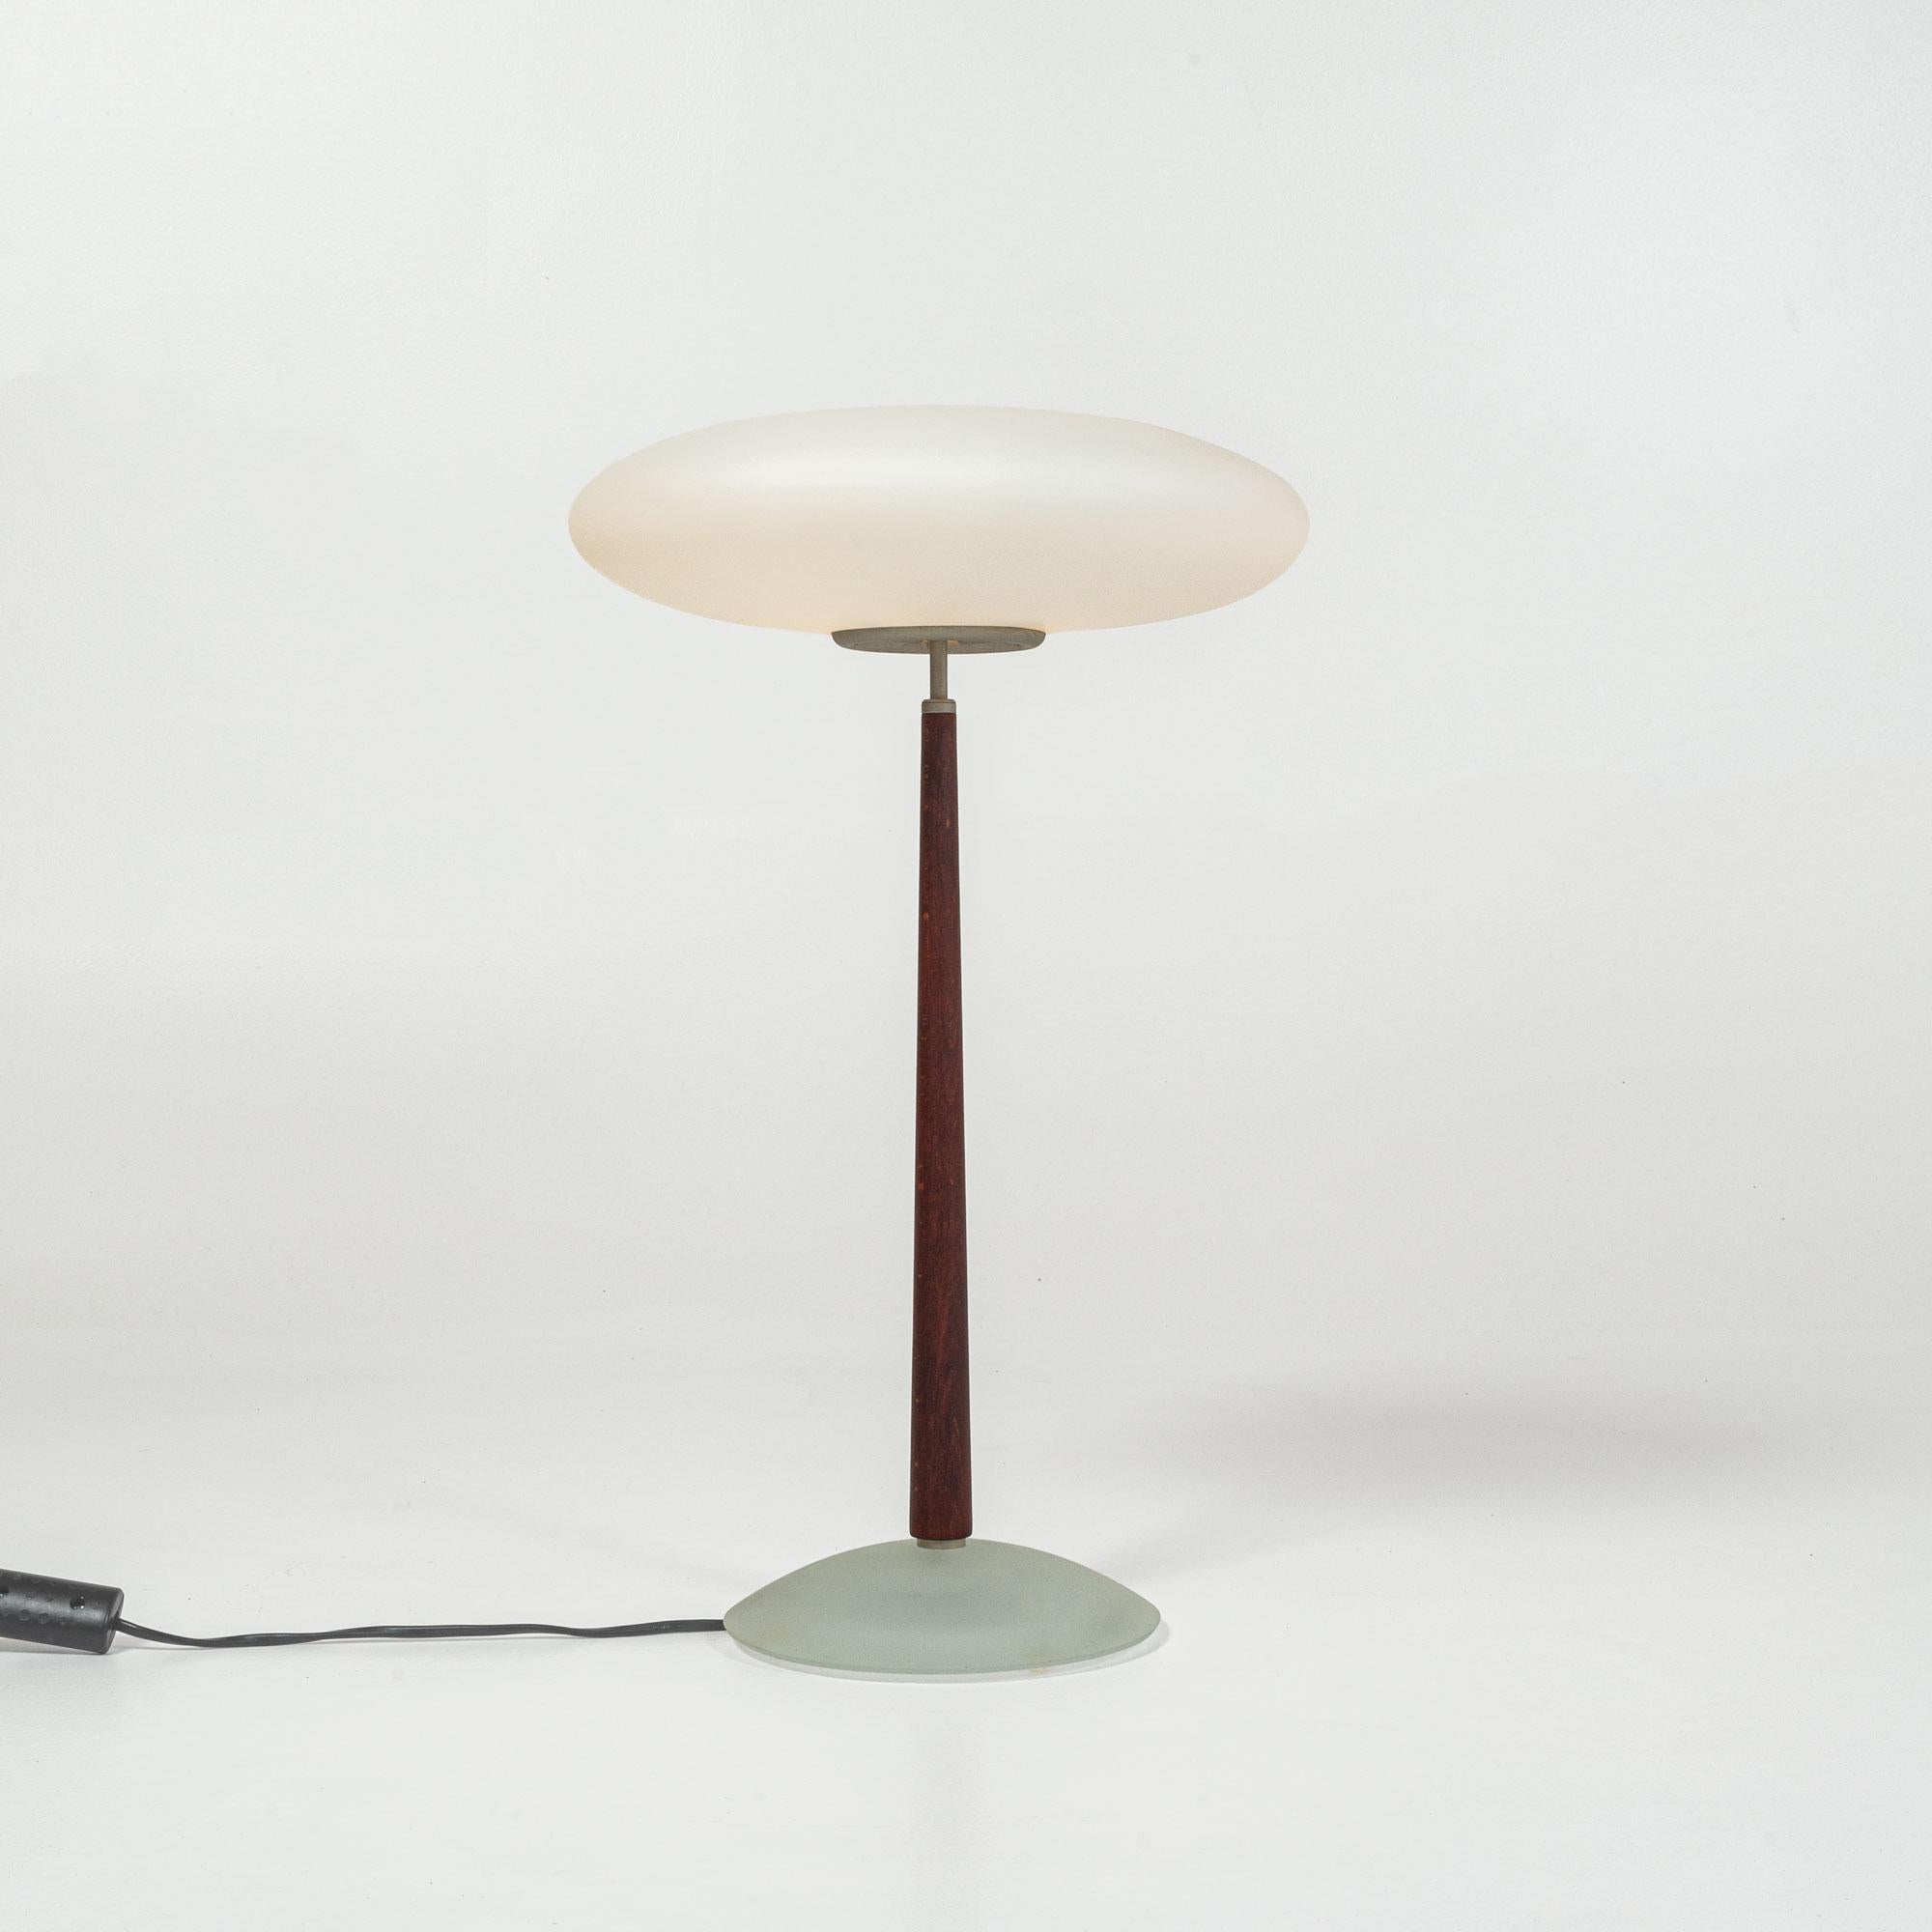 Lampe de table vintage en forme de champignon conçue par Matteo Thun pour Arteluce, fabriquée en Italie.
 